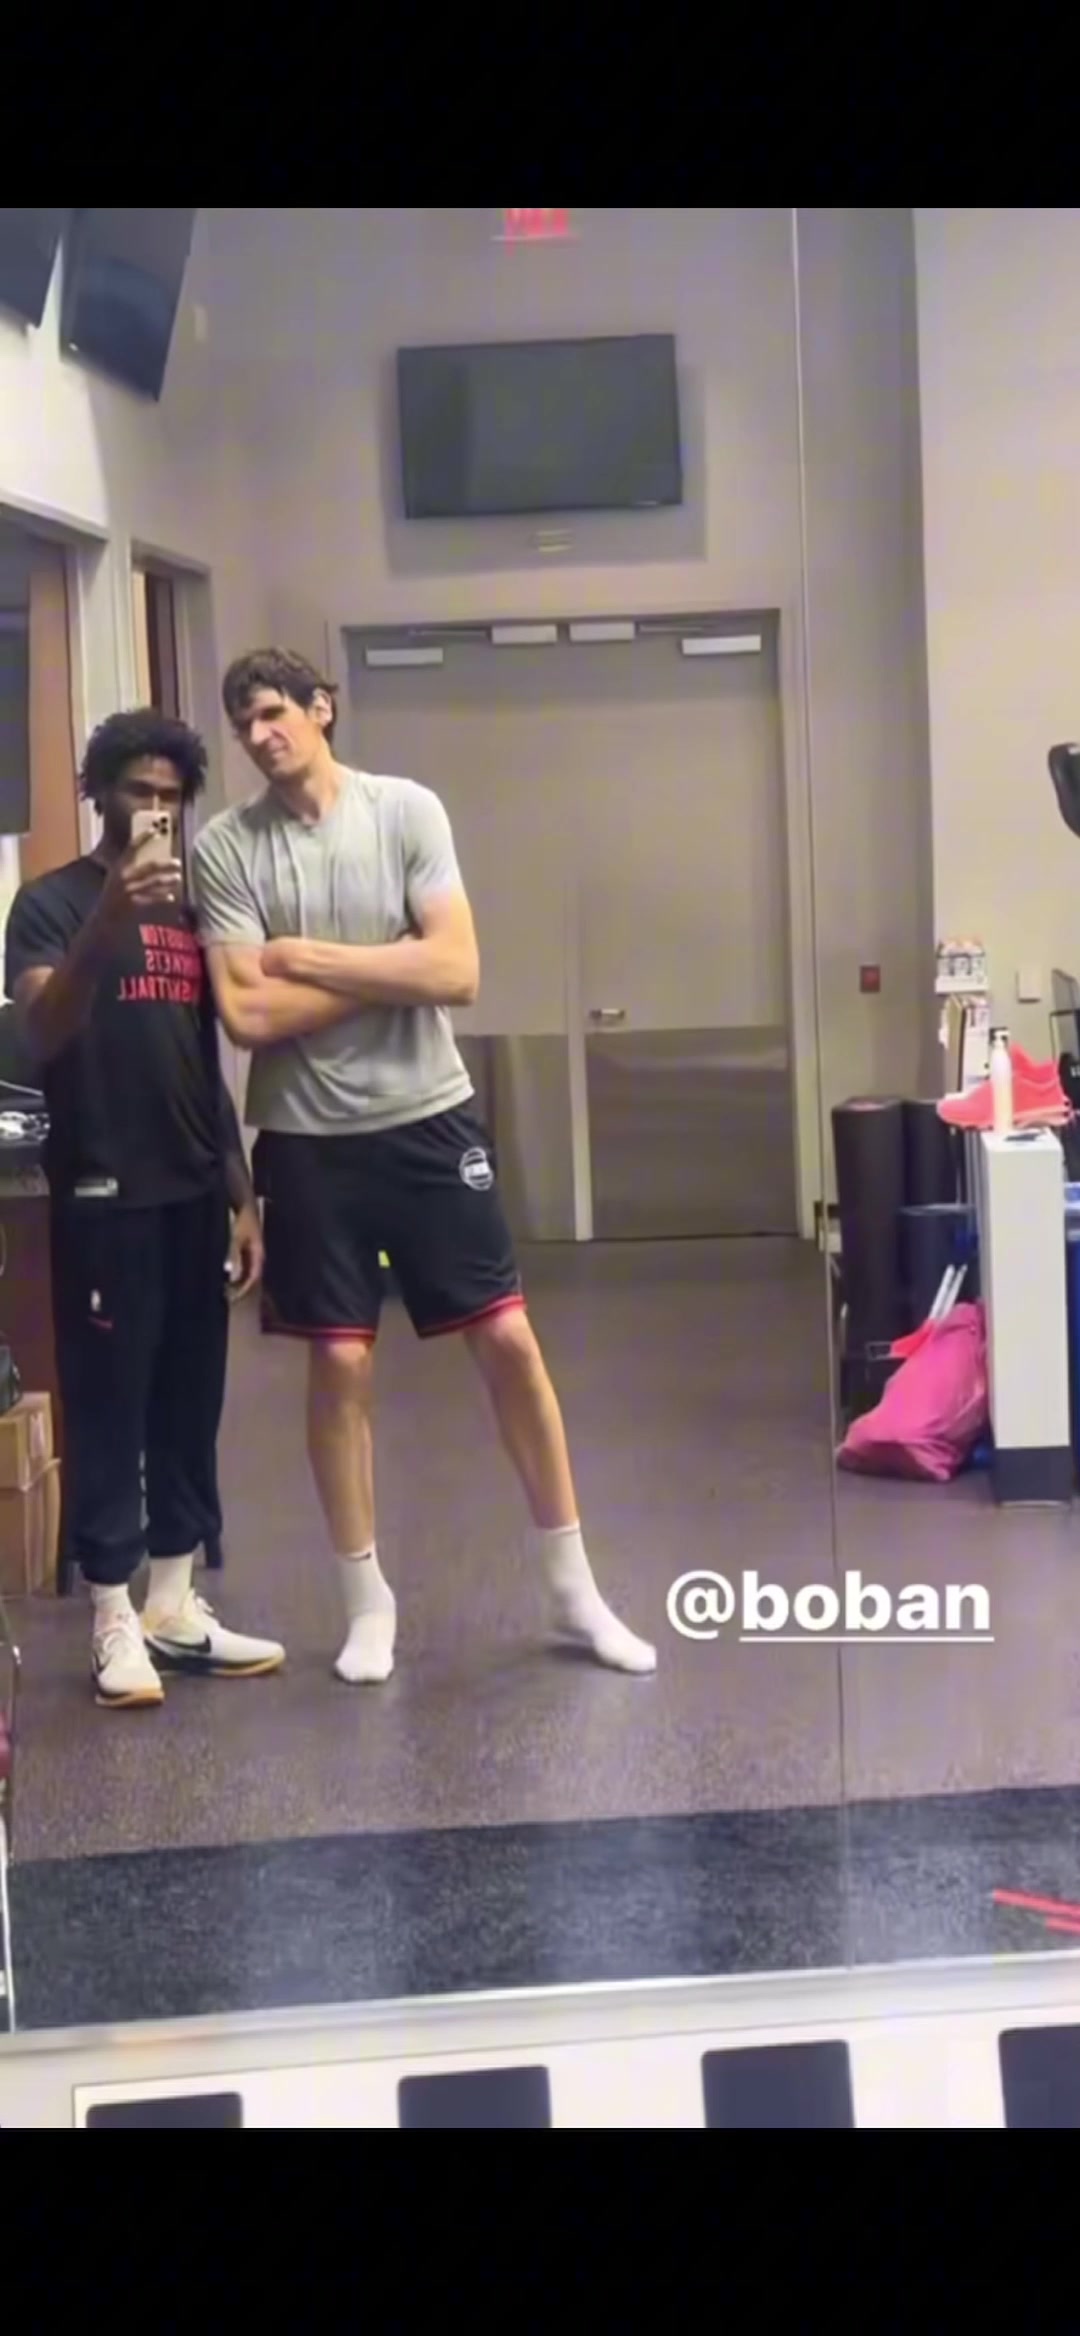 伊森和博班这干啥呢，在健身房里拍逗比视频